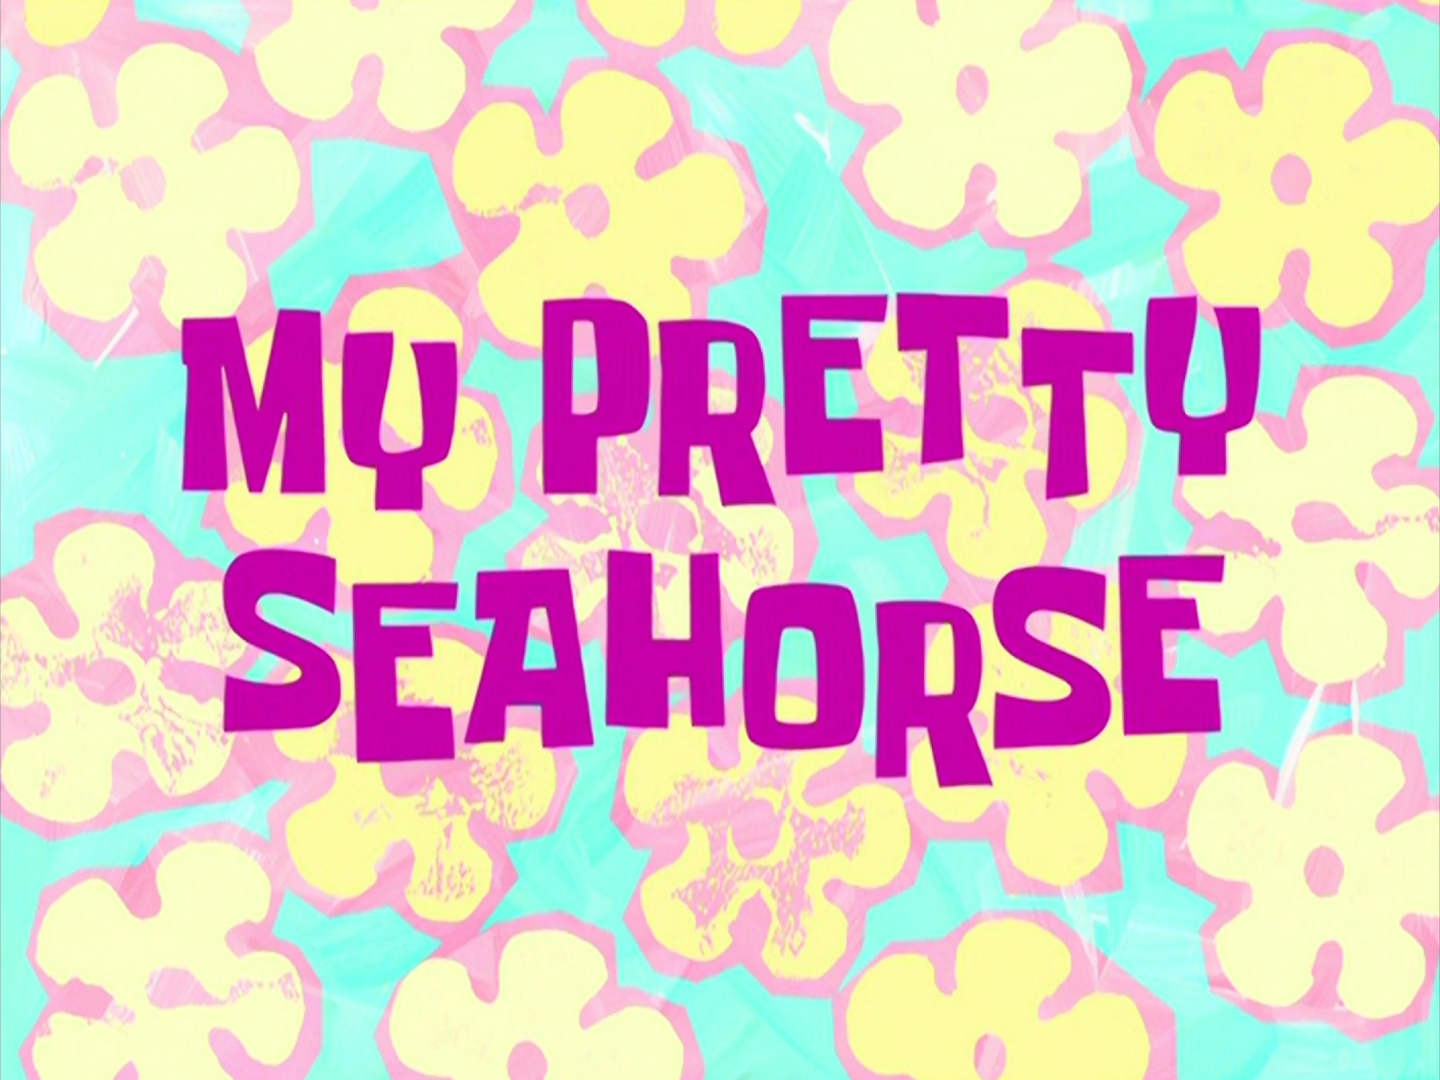 My Pretty Seahorse Transcript Encyclopedia Spongebobia Fandom